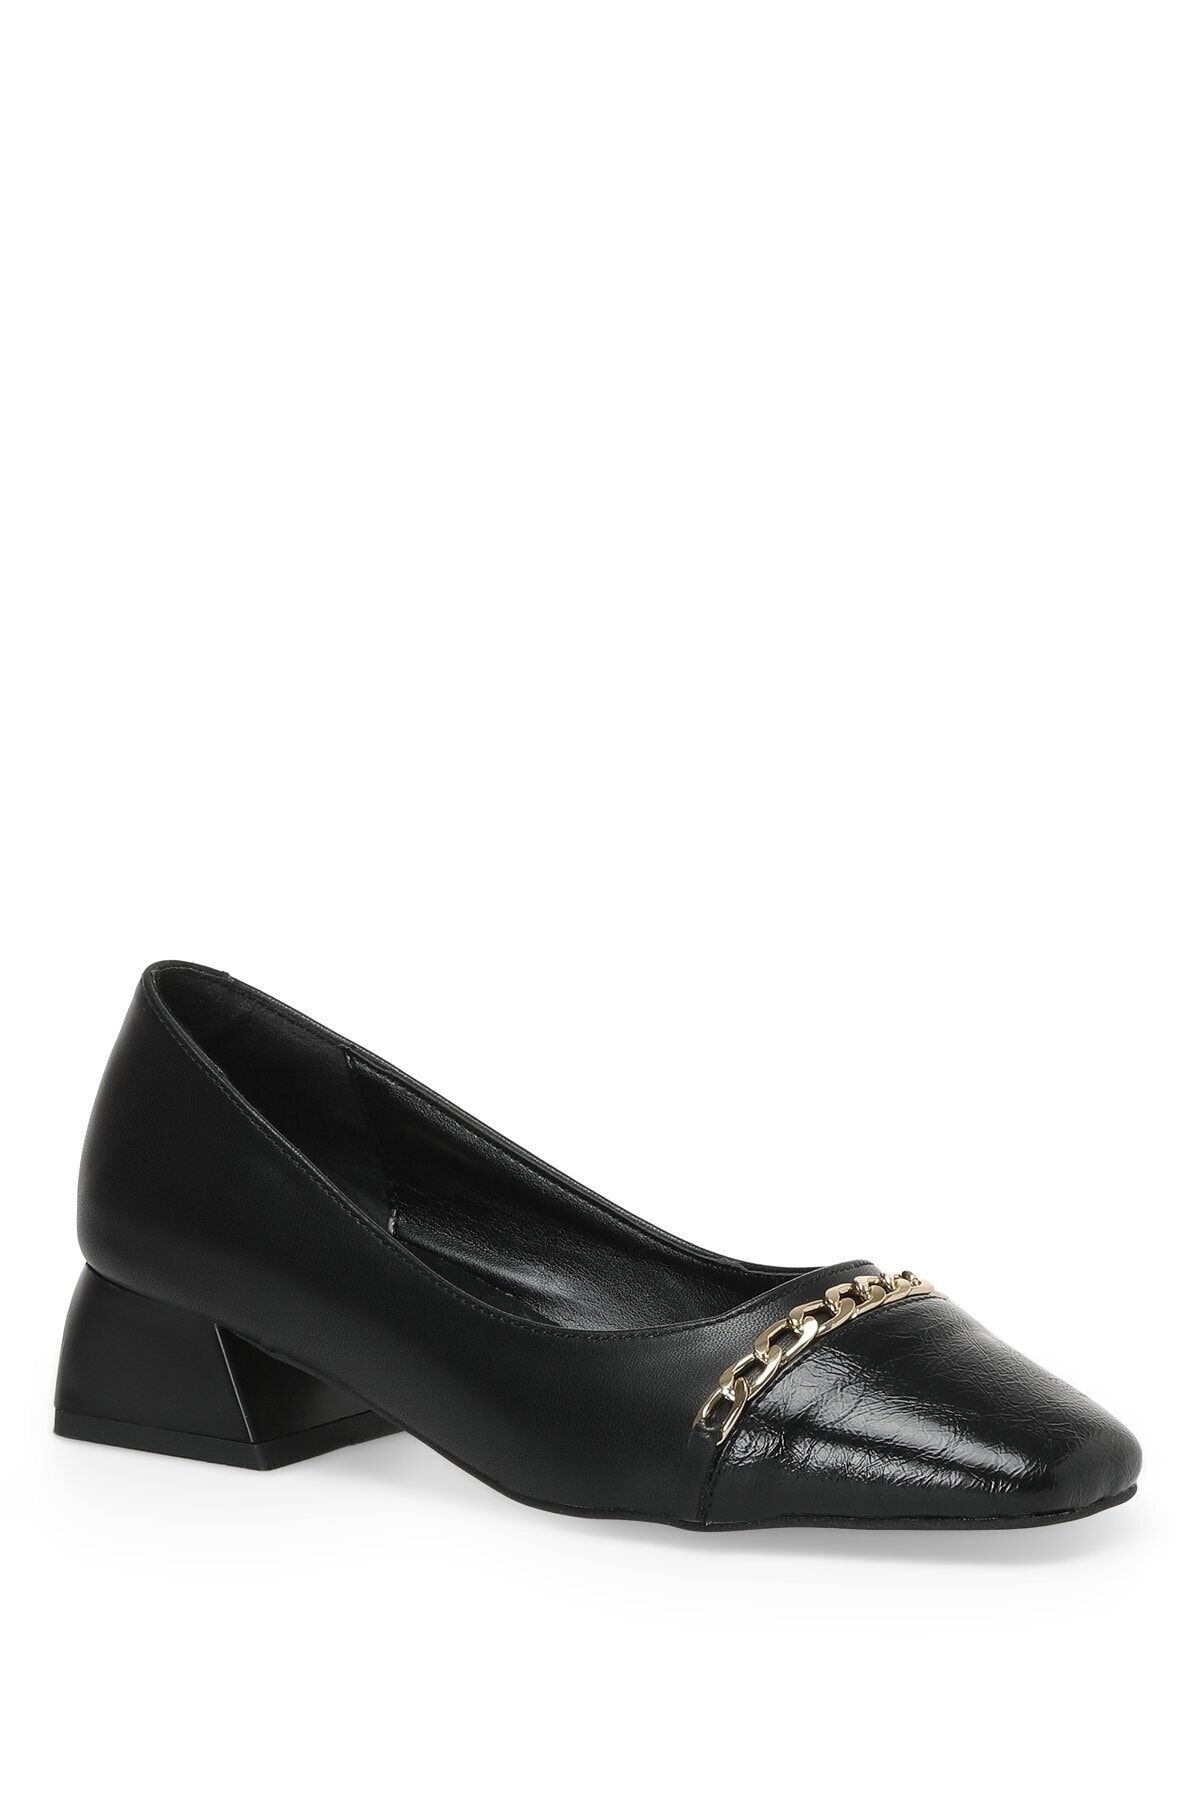 Butigo Siyah Kadın Topuklu Ayakkabı 22k-030 2pr